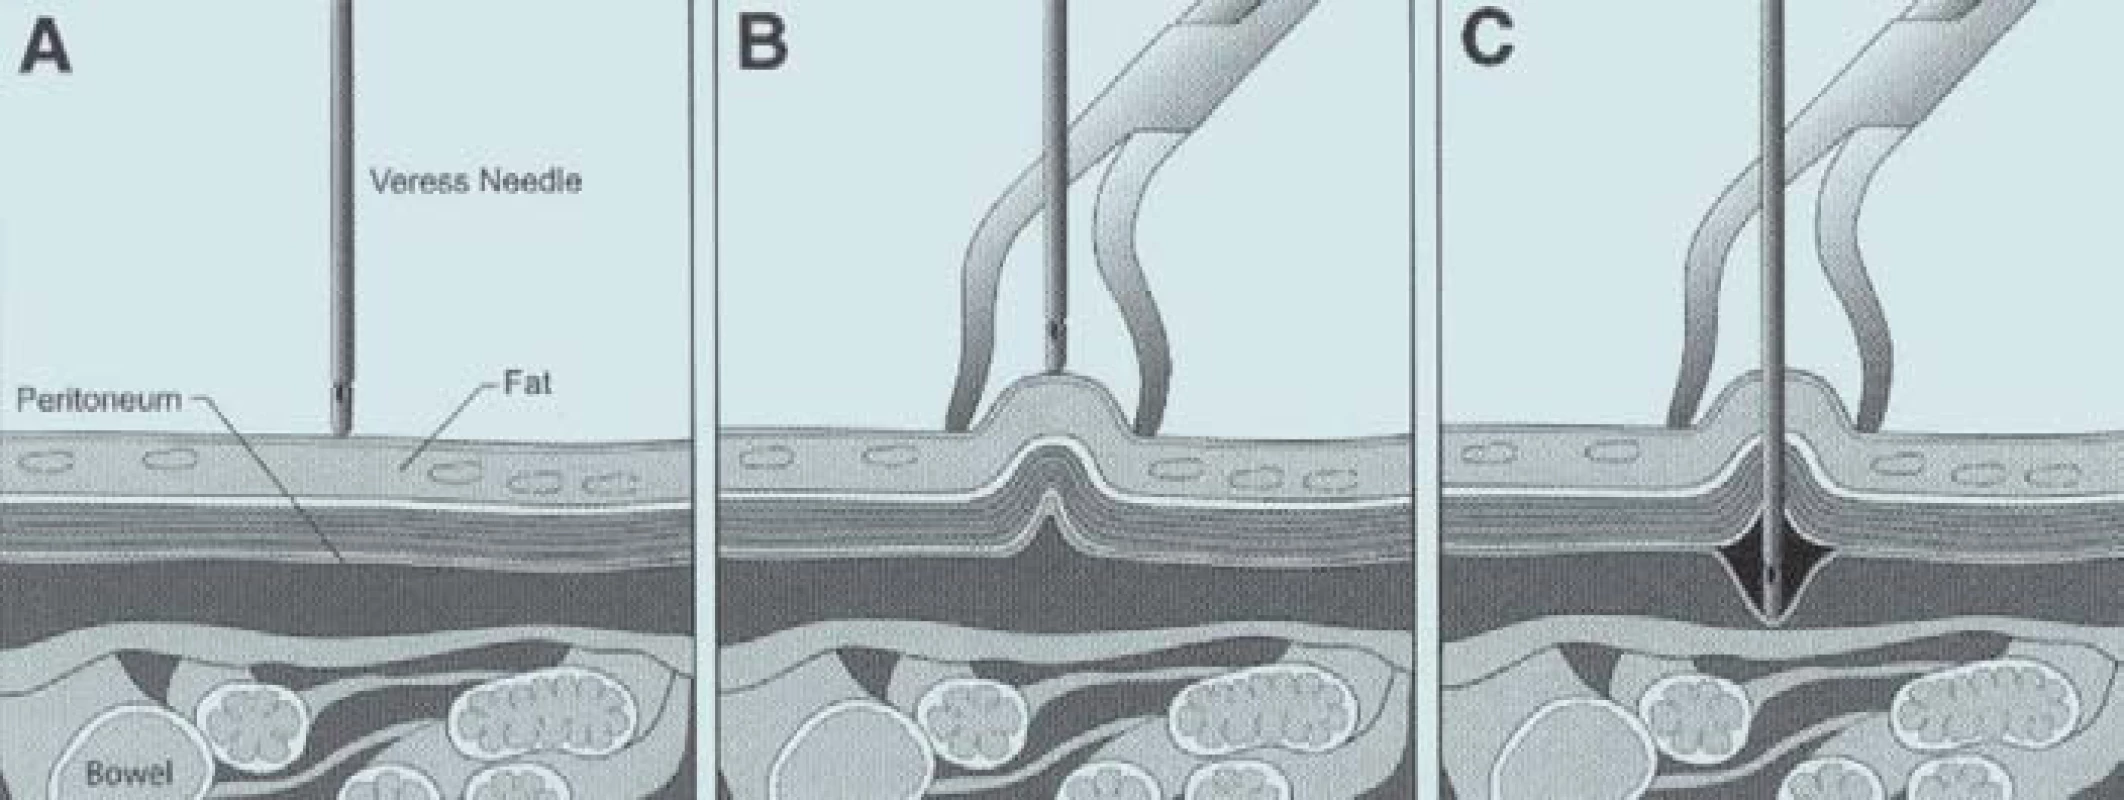 (A) Veressova jehla před proniknutím stěnou břišní. Střevní kličky jsou v blízkosti břišní stěny. (B) Elevací břišní stěny dojde k oddálení peritonea od střevních kliček a zabránění poranění střeva jehlou. (C) Při elevaci břišní stěny může dojít k uvolnění peritonea. Punkce se stává velmi obtížnou. Dochází k insuflaci plynu do prostoru mezi peritoneum a břišní stěnu. Rozpínání arteficiálního prostoru tlačí peritoneum na střevní kličky a punkce se stává nebezpečnou.